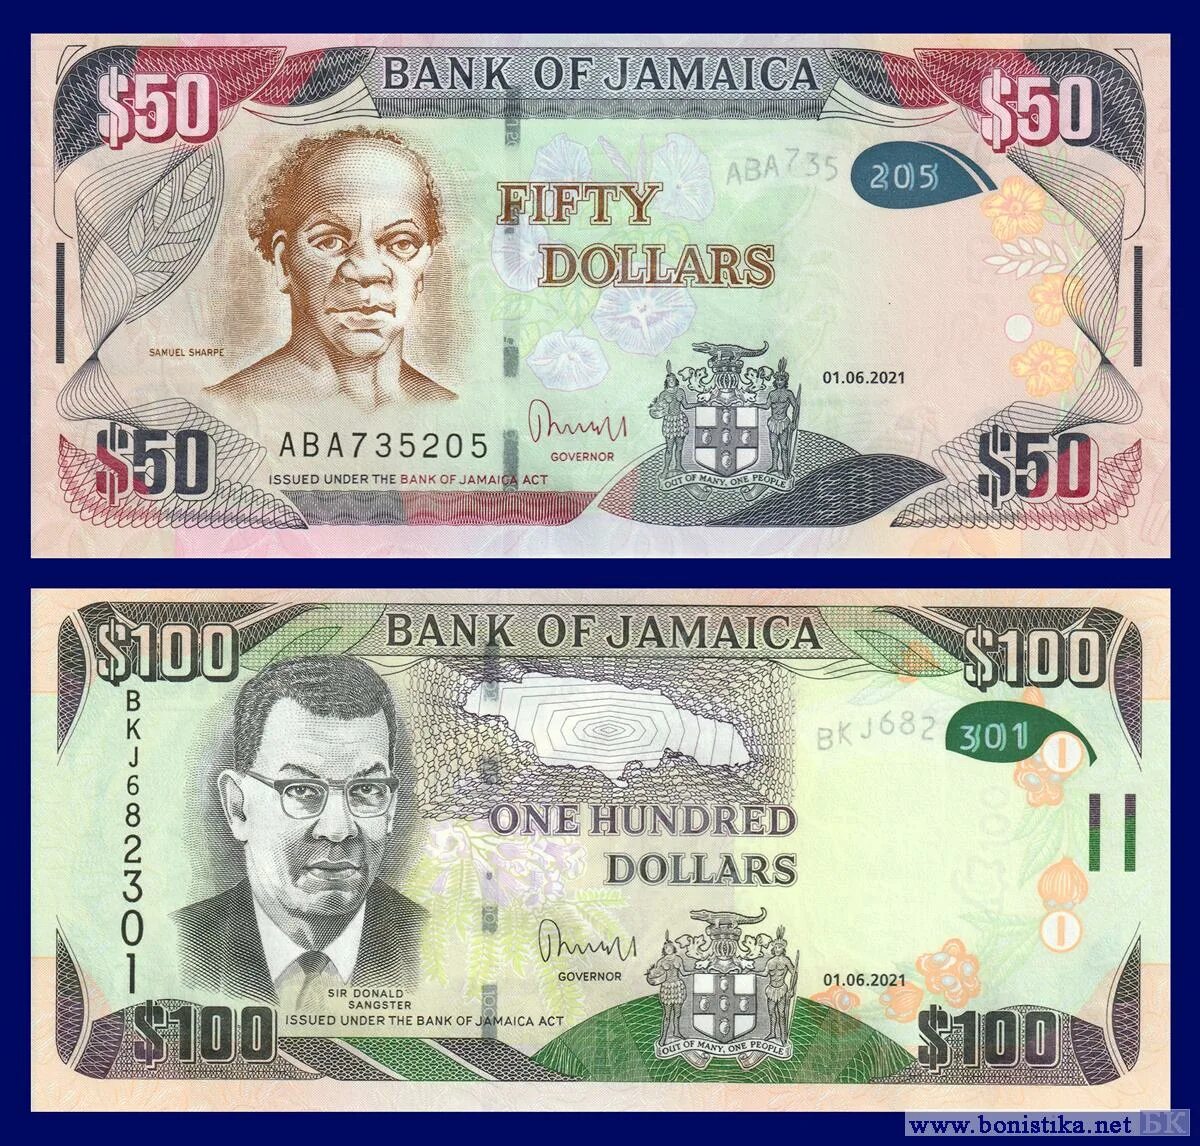 Тираж купюры. Доллары купюры нового образца. 100 Долларов нового образца. Валюта Ямайки. Новый дизайн стодолларовой купюры.